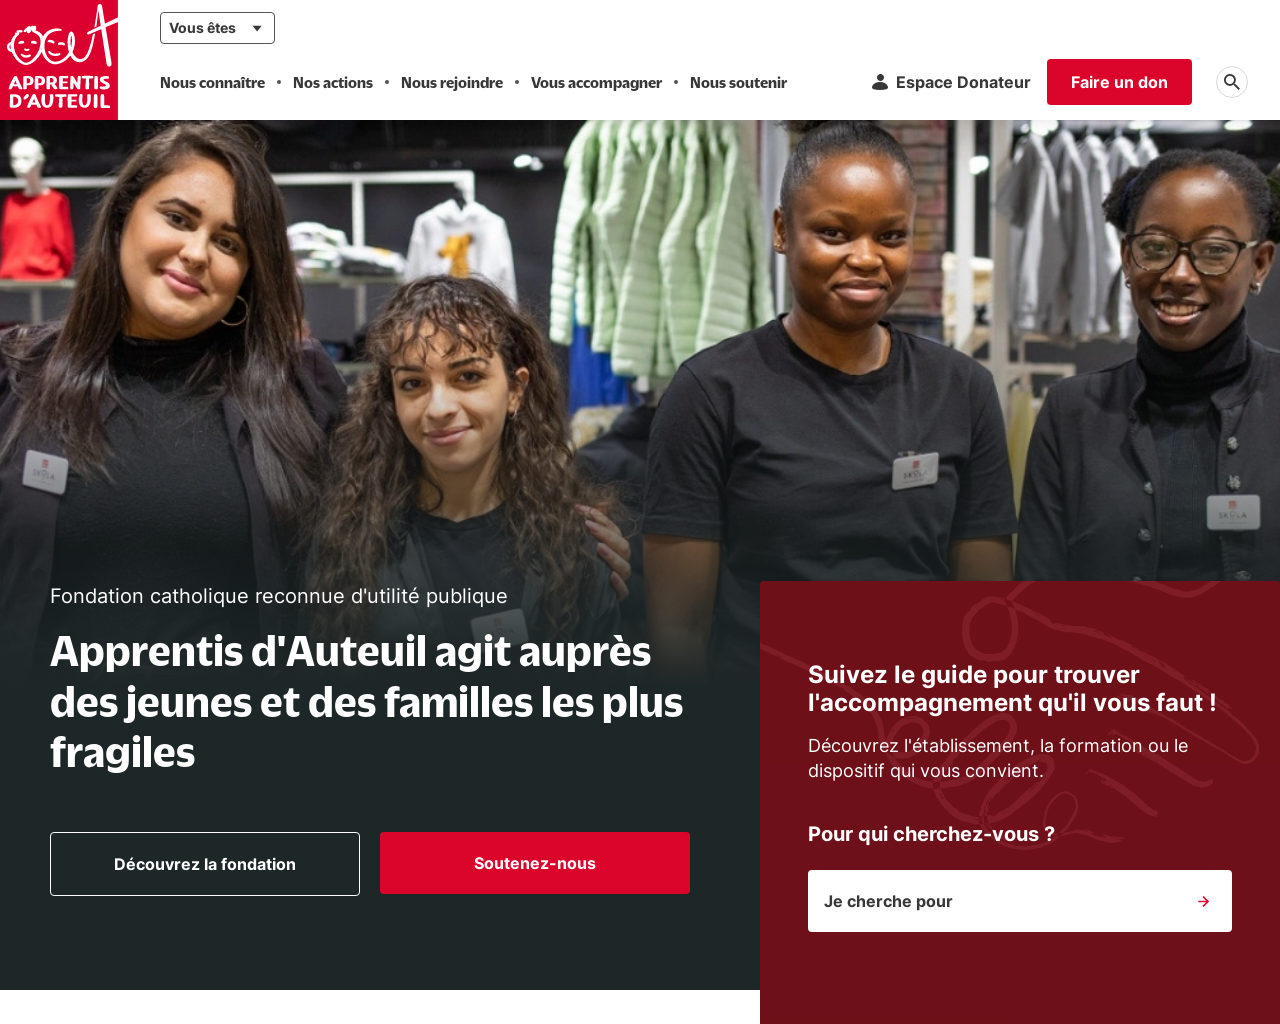 www.apprentis-auteuil.org